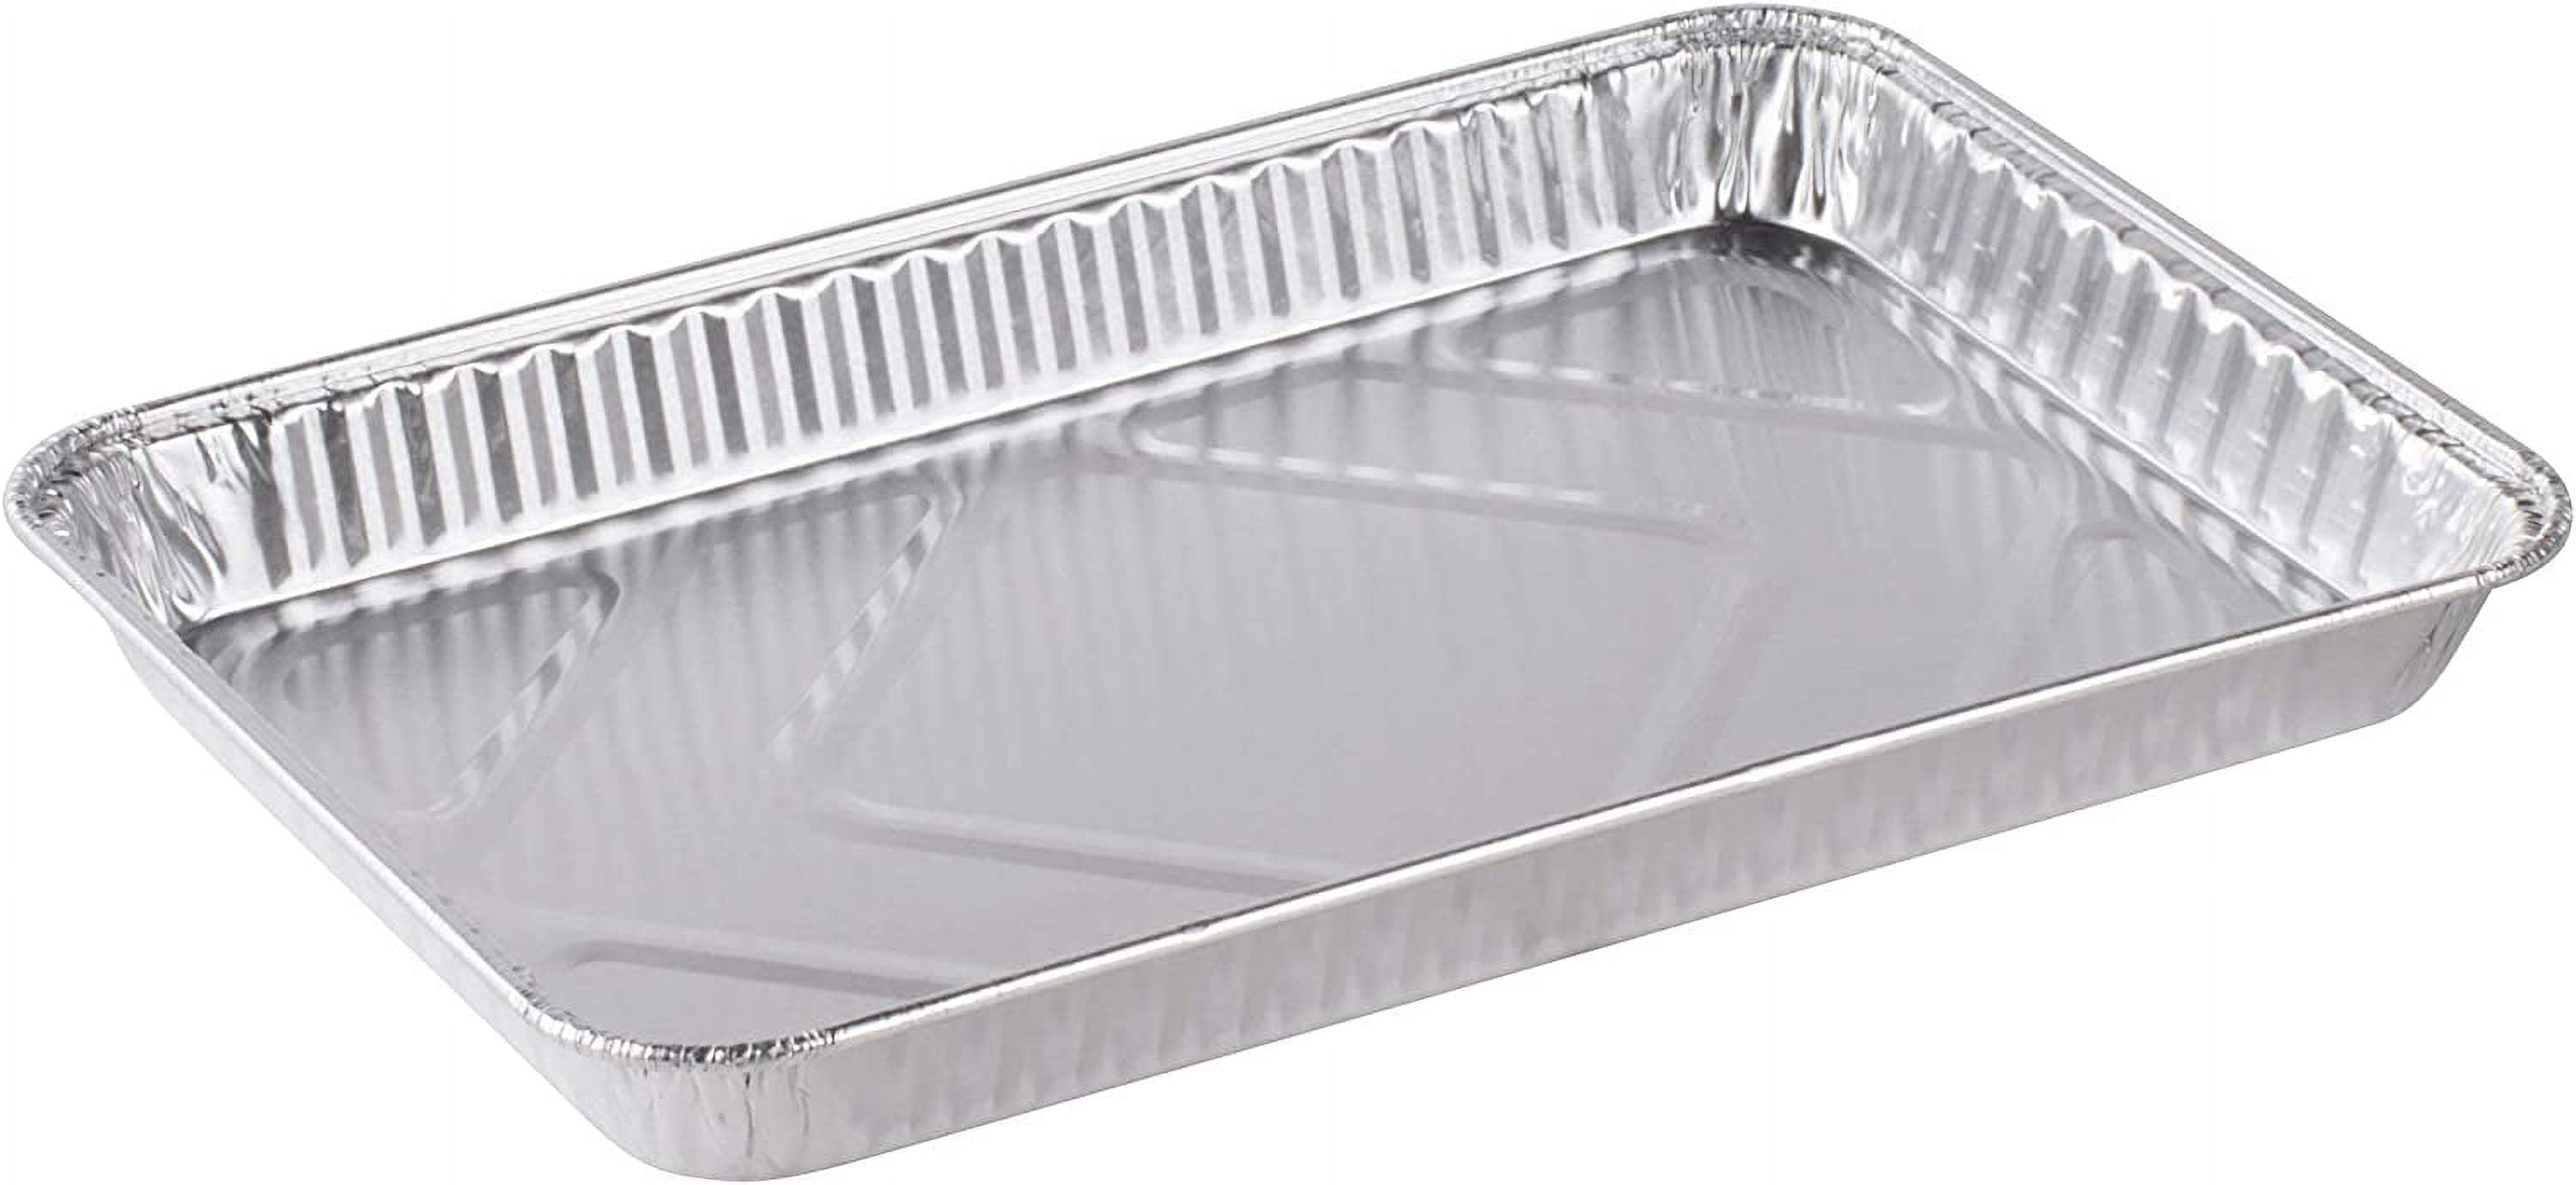 VeZee's Disposable 9X13 Aluminum Foil/Pan With Aluminum Lids Half